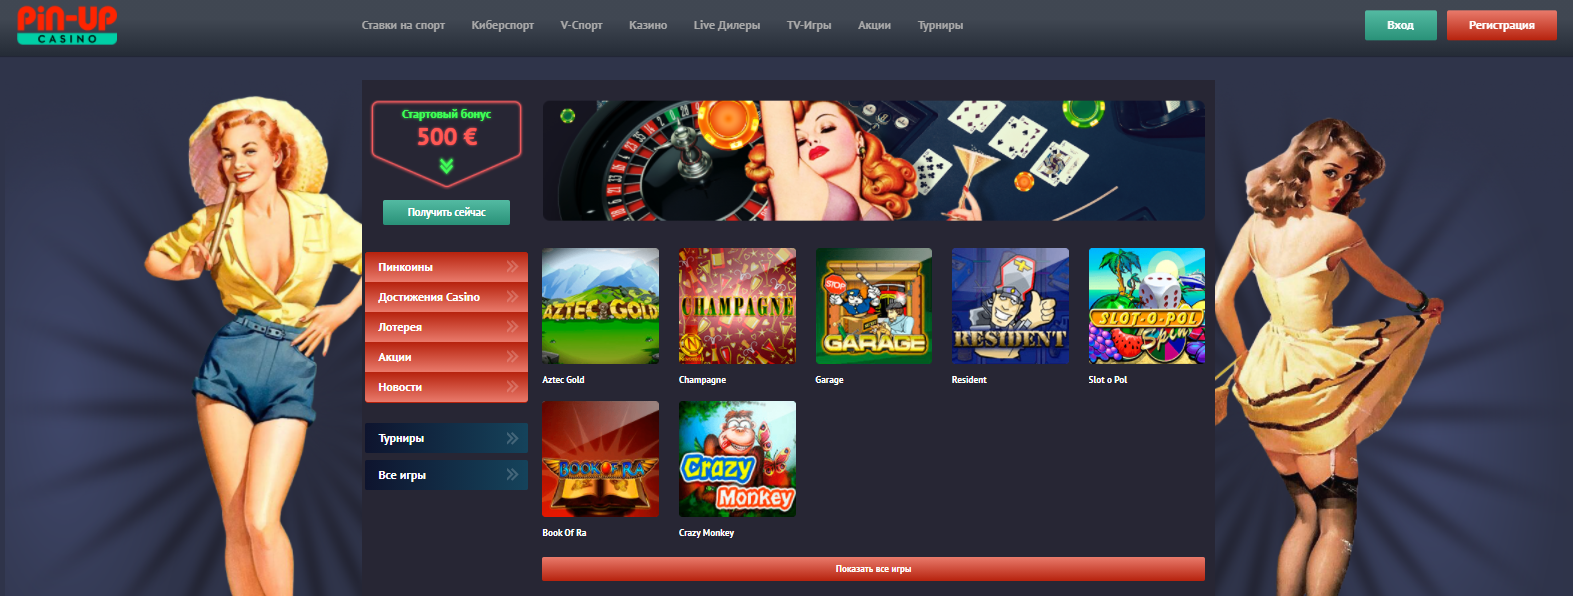 Pin up ставки casino pinup site xyz игровые автоматы с высокой дисперсией